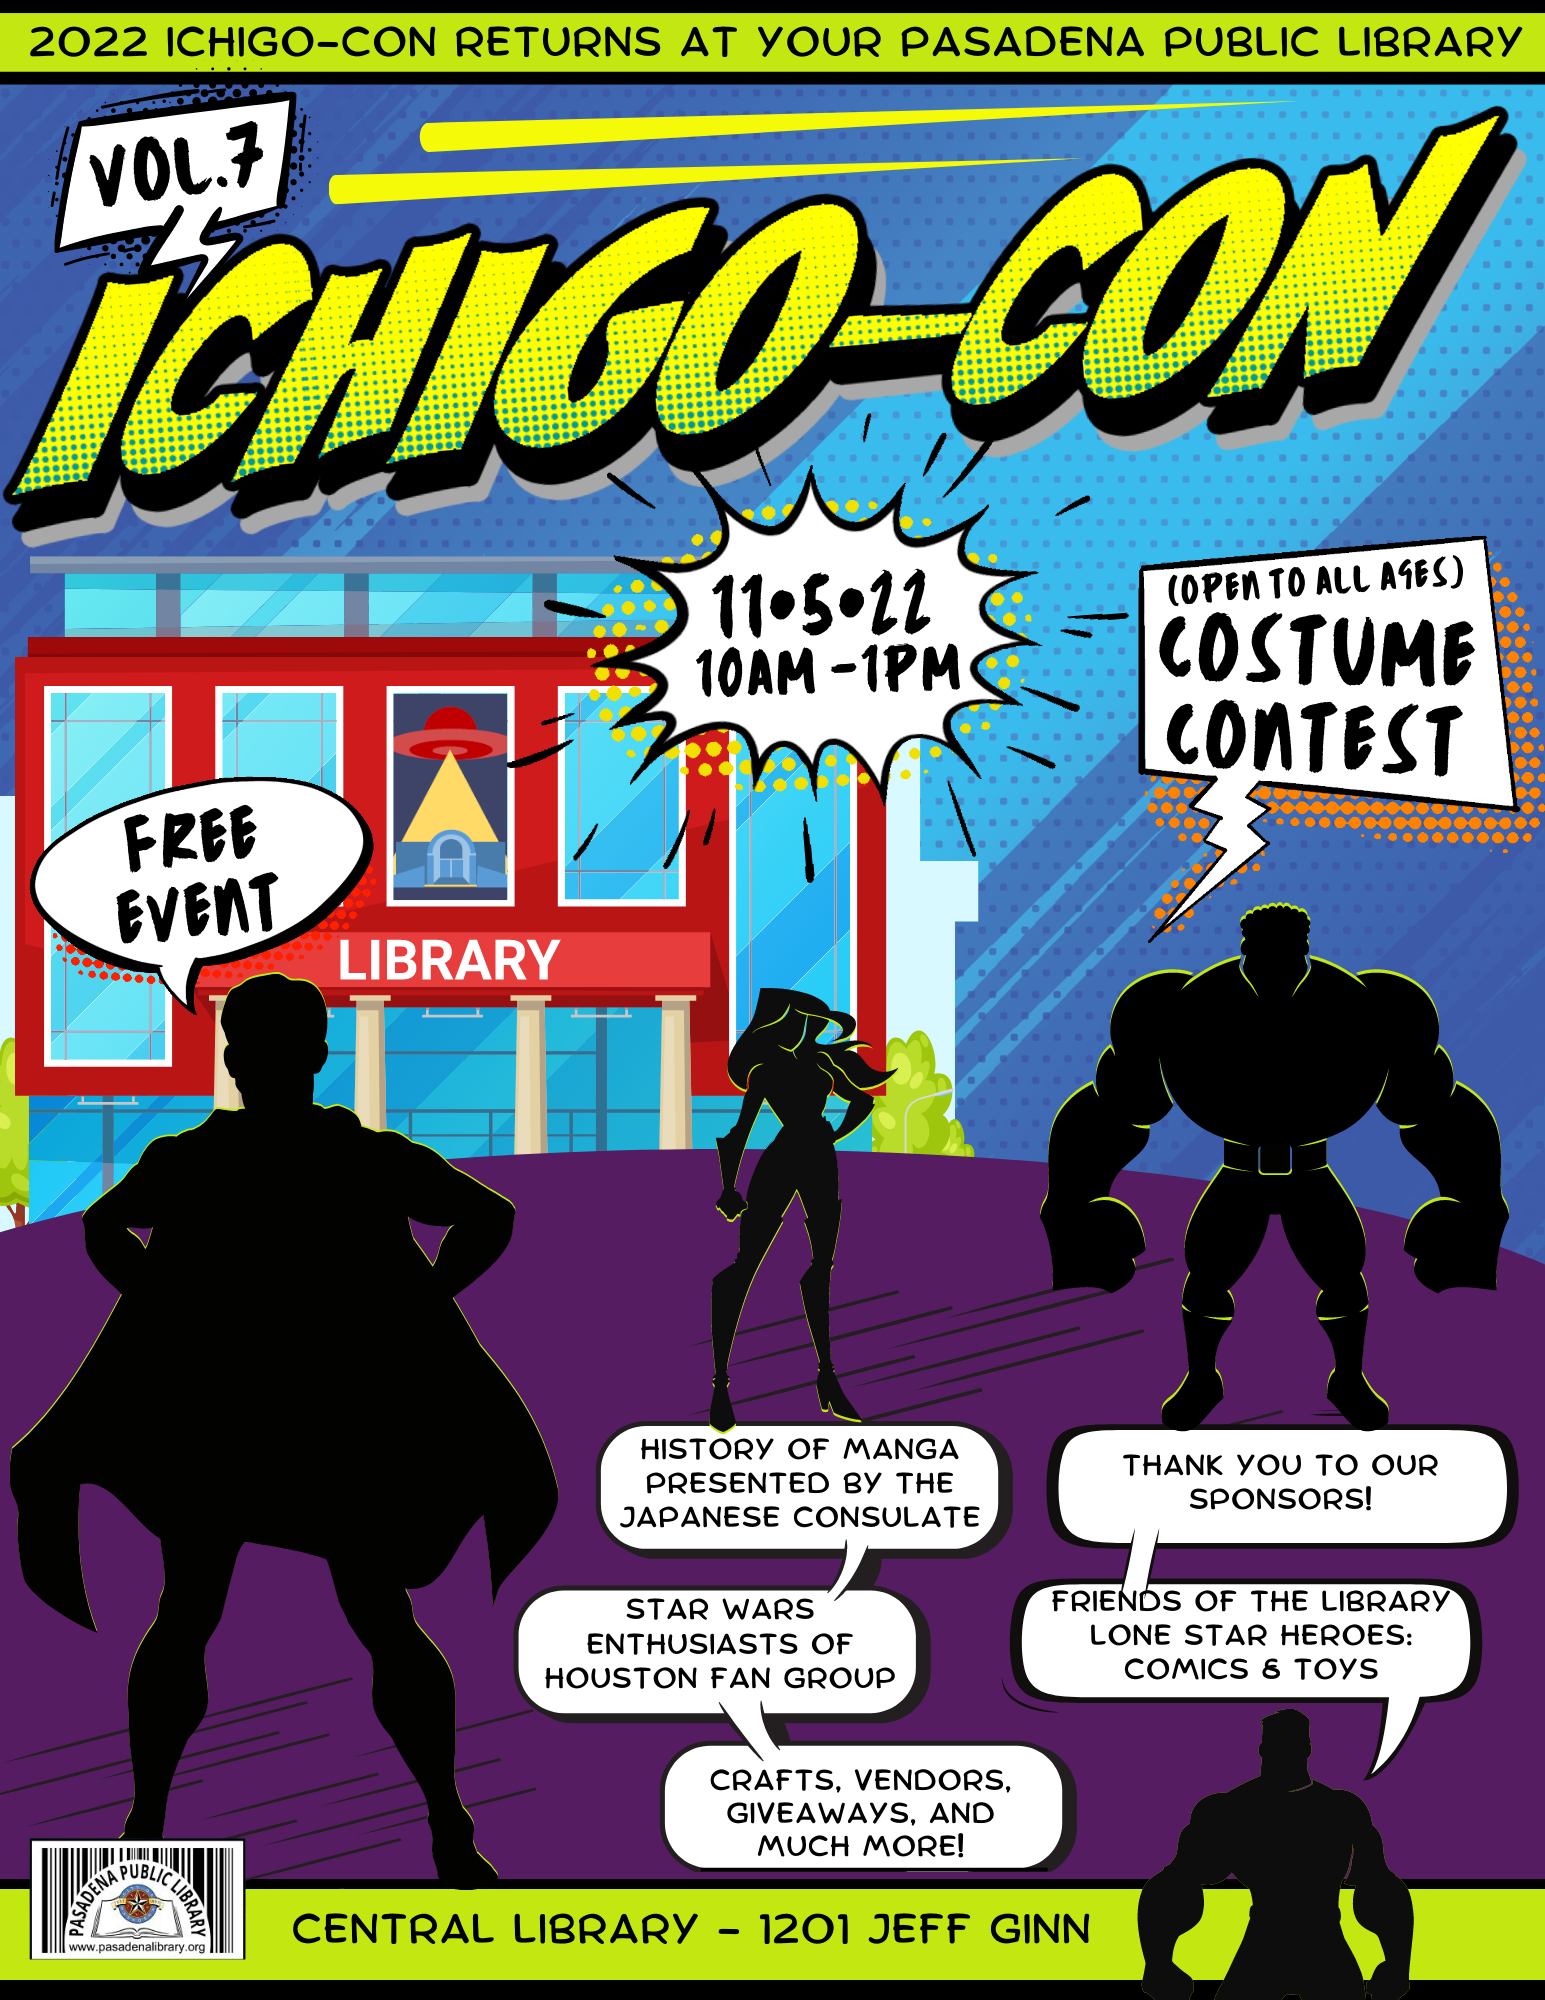 Ichigo-Con, Pasadena’s own mini-convention, returns to the Pasadena Public Library!